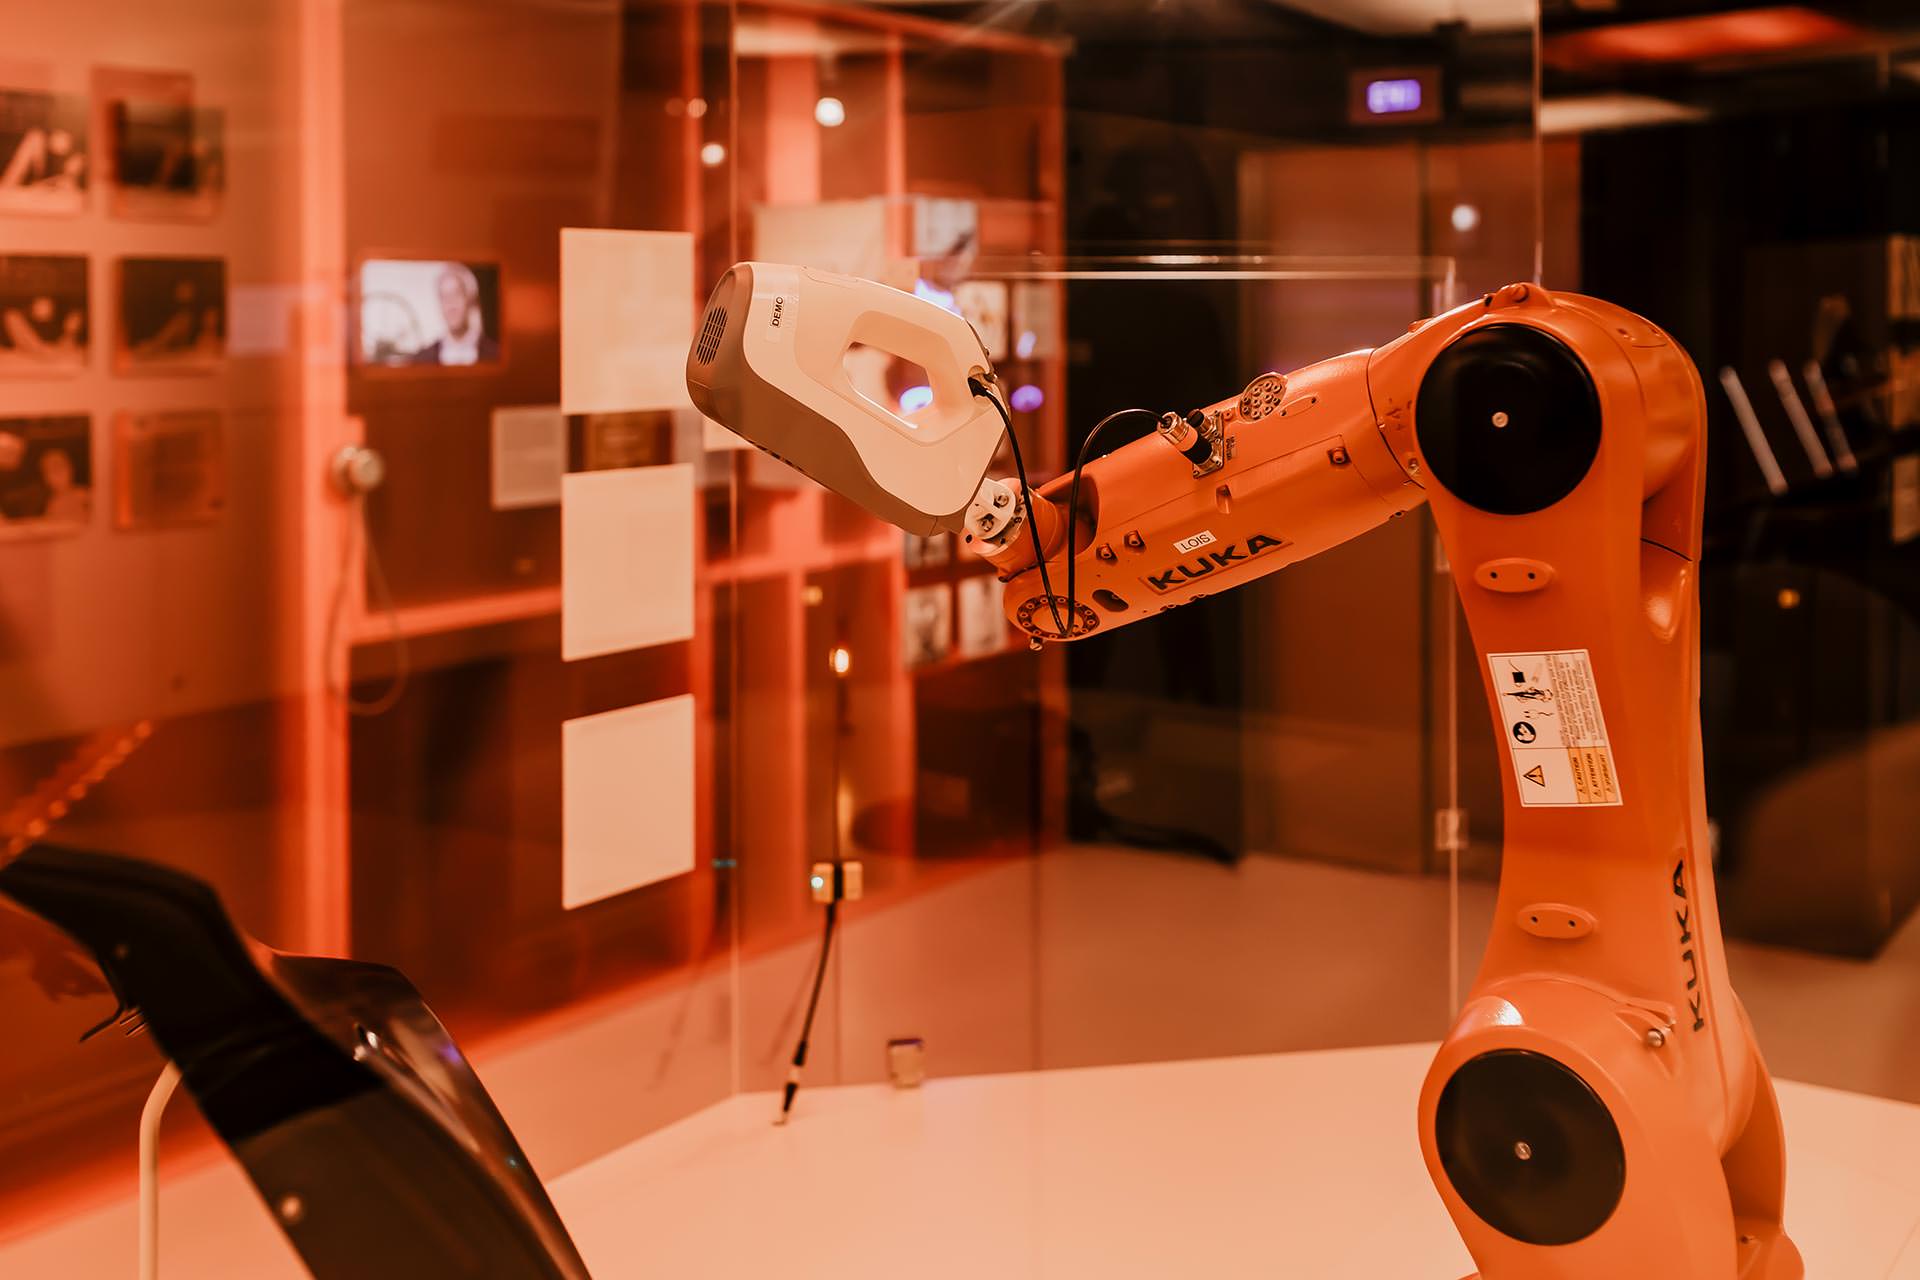 Anzeige. technisches museum wien ausstellung, content creator, digitalisierung in der arbeitswelt, mensch und roboter arbeiten zusammen, mensch und maschine, qualität und quantität der arbeit, arbeit und produktion, Digital Influencer Life, tmw, technisches museum wien, Ausstellungen in wien, Karriere Blog, www.whoismocca.com #technischesmuseumwien #tmvienna #digitalisierung #automatisierung #roboter #cobots #karriere #blogger #creator